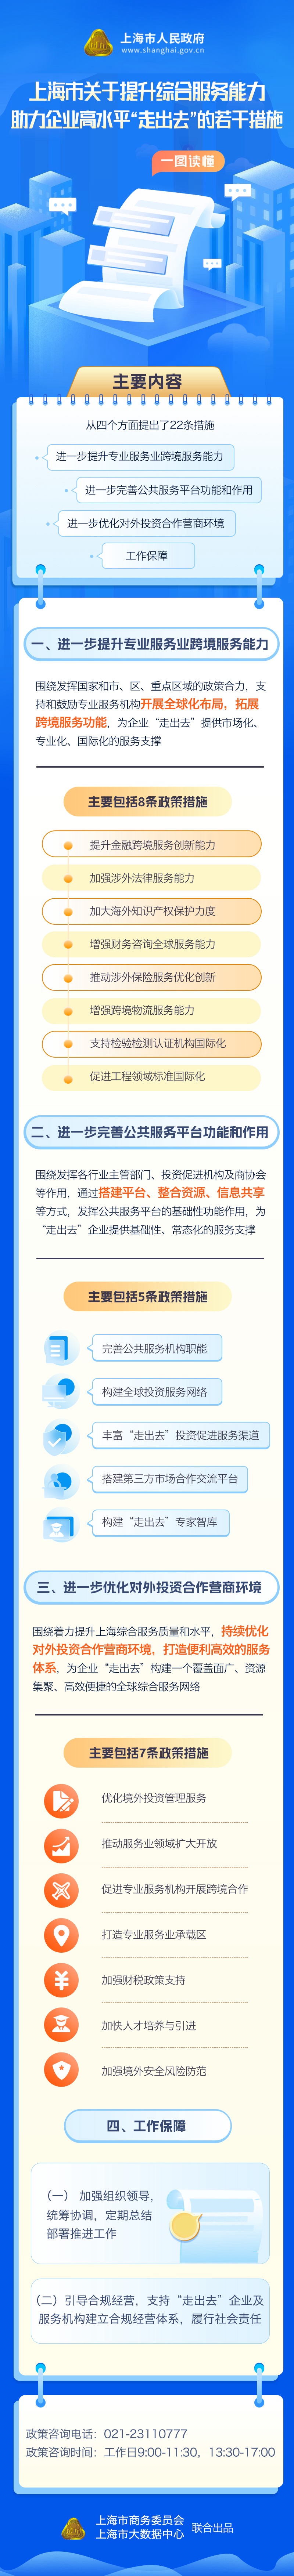 一图读懂《上海市关于提升综合服务能力助力企业高水平“走出去”的若干措施》.jpg